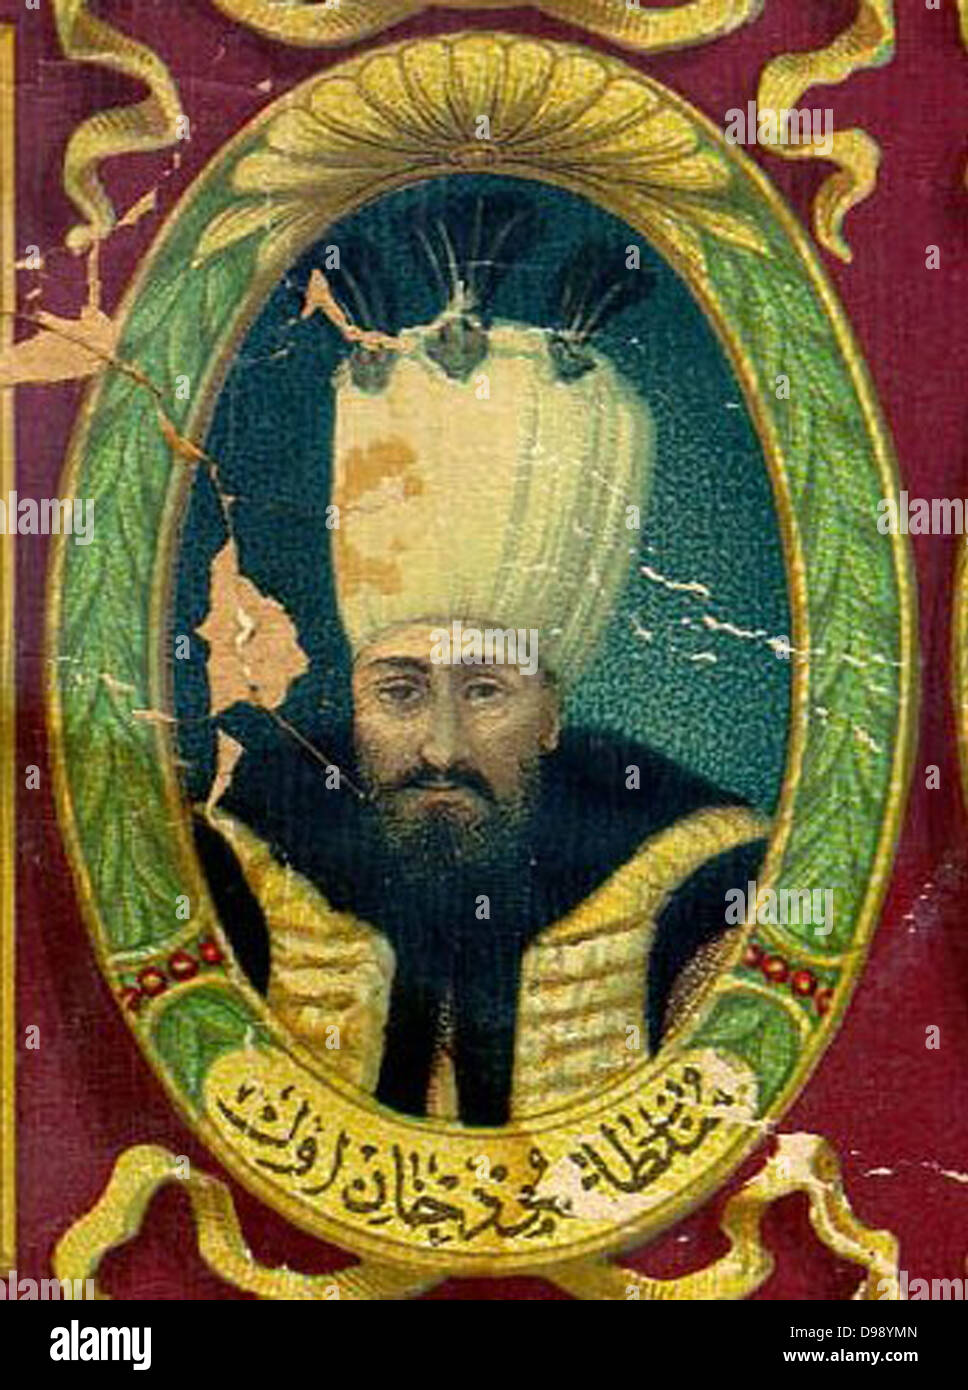 Mahmud I sultano ottomano. Regno Settembre 20, 1730-dicembre 13, 1754. Mahmud I (1696 - 1754) Foto Stock